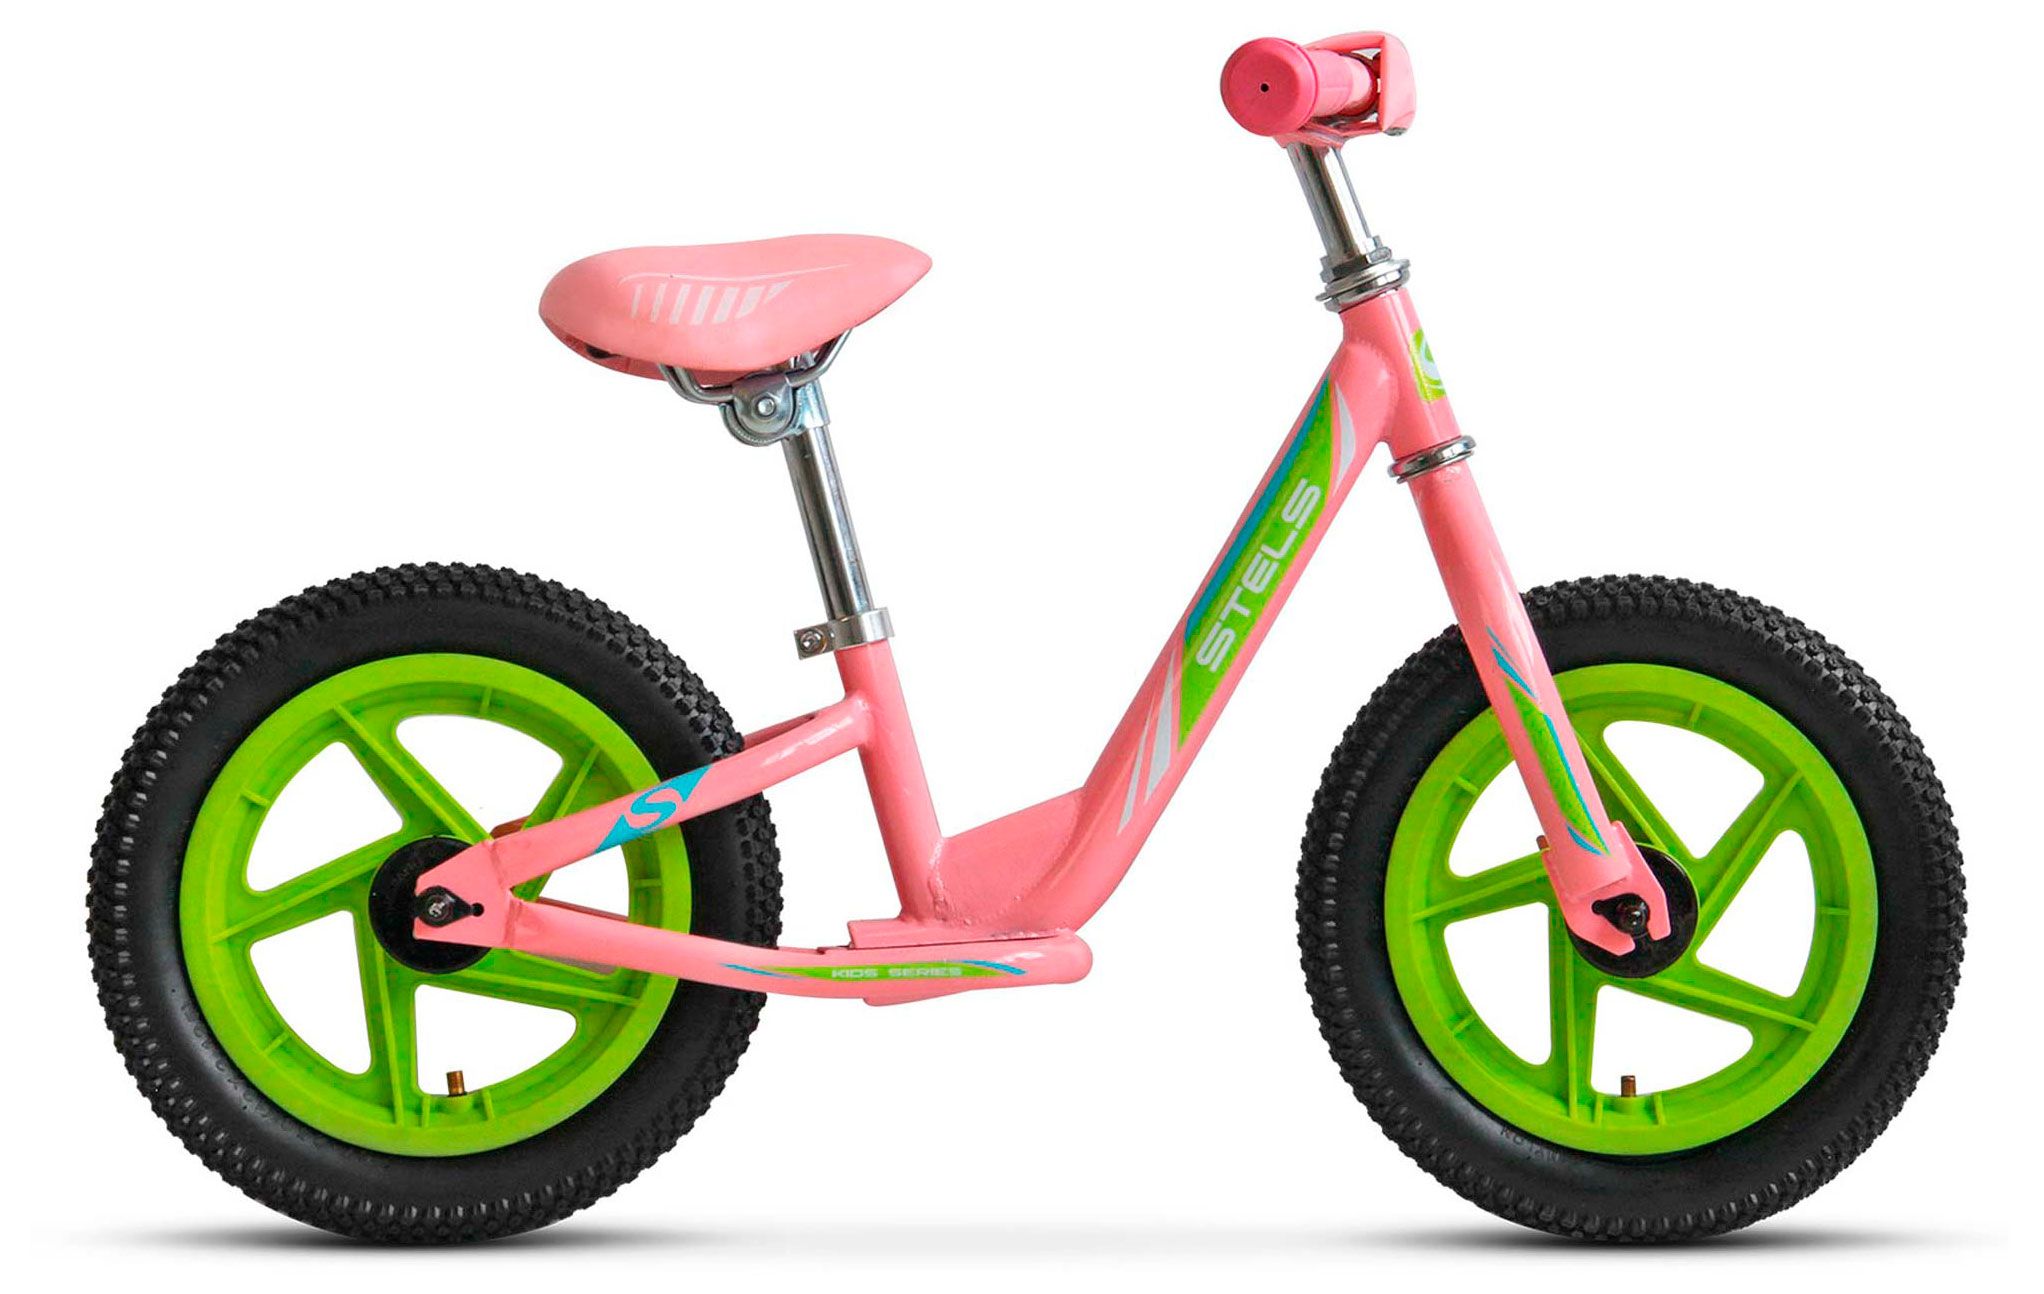  Отзывы о Детском велосипеде Stels Powerkid 12 (Girl) V020 2018